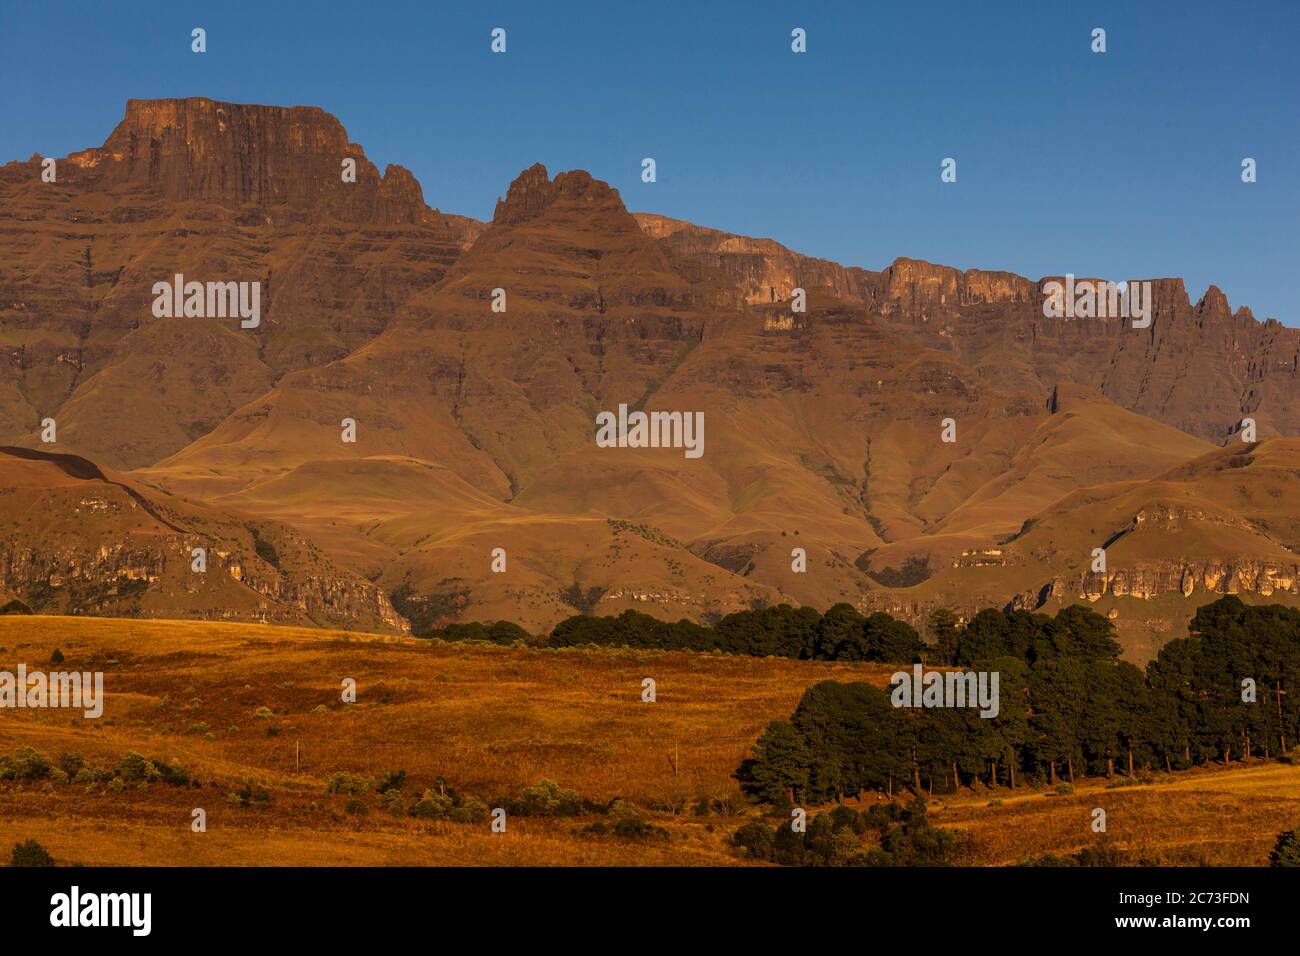 Drakensberg, Champagne Castle Mountain, Morning, Giants Castle Game Reserve, district d'Uthukela, province du KwaZulu-Natal, Afrique du Sud, Afrique Banque D'Images